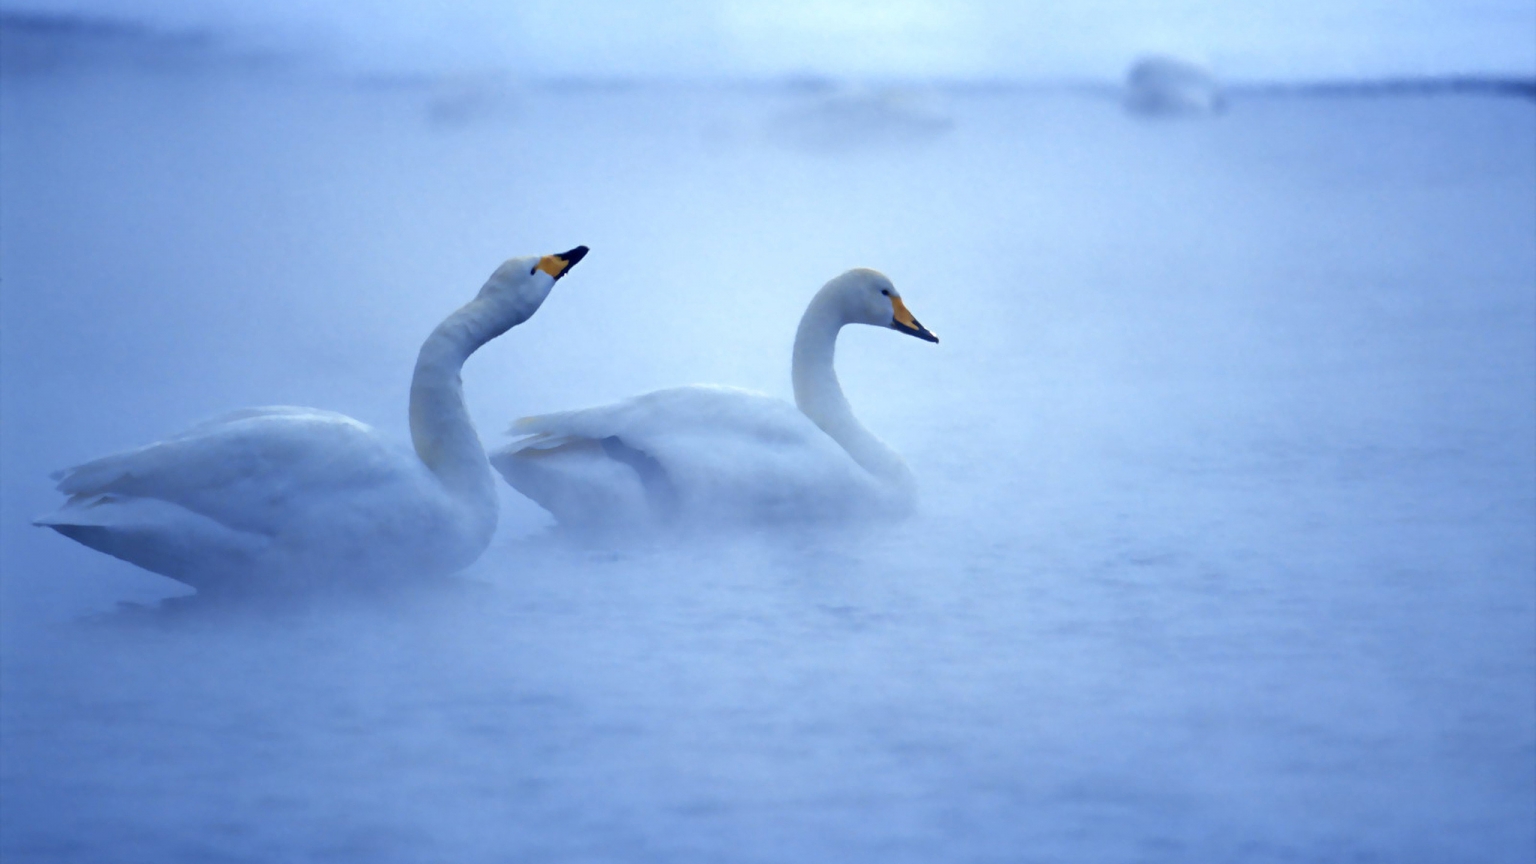 Lovely Swans for 1536 x 864 HDTV resolution